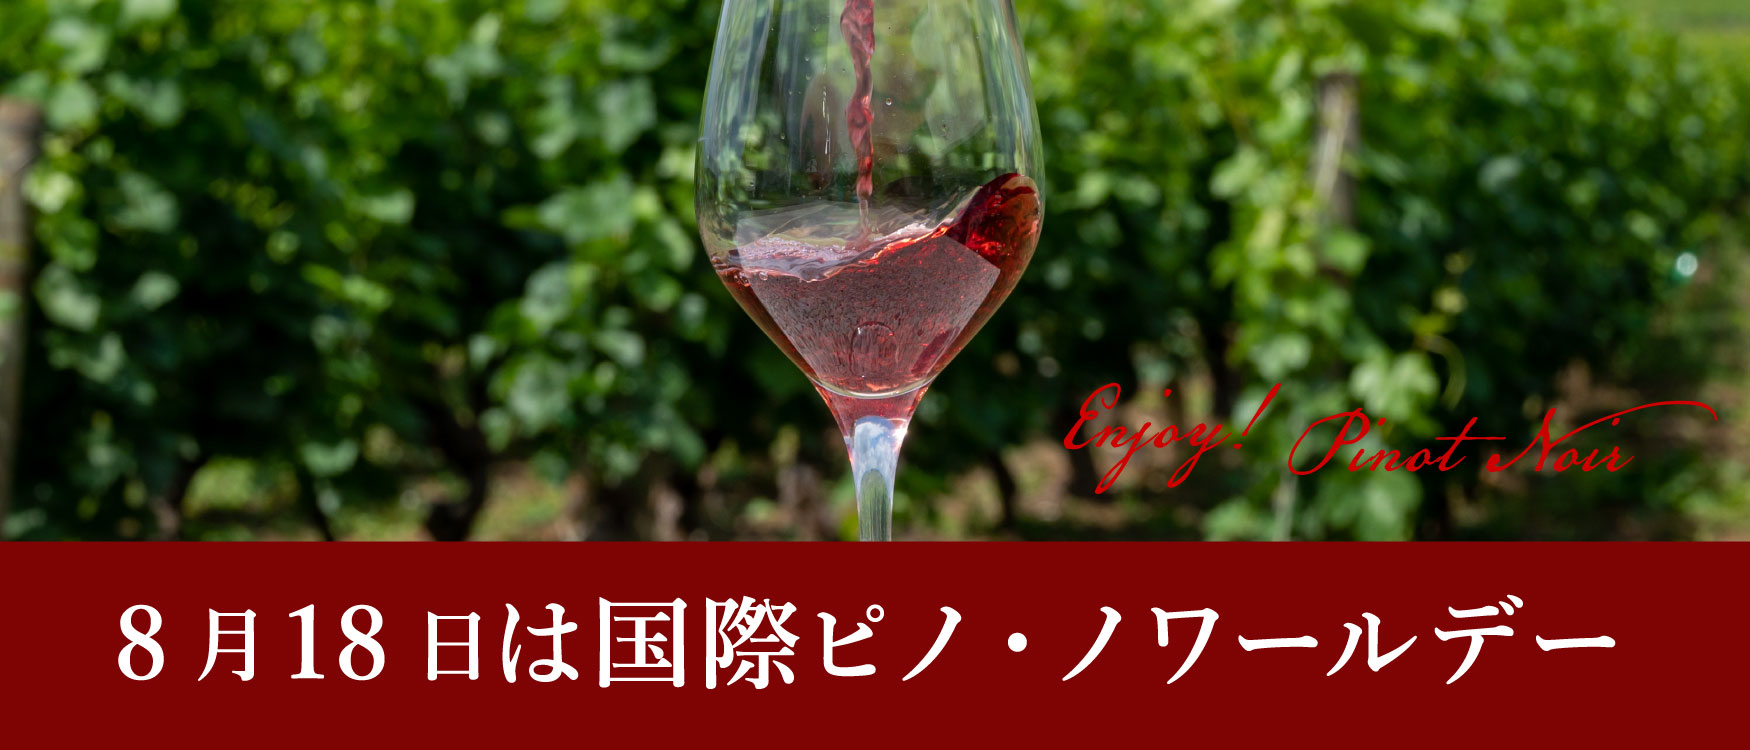 ピノ・ノワールのワイン商品一覧 | ピーロート・ジャパン ハイエンド